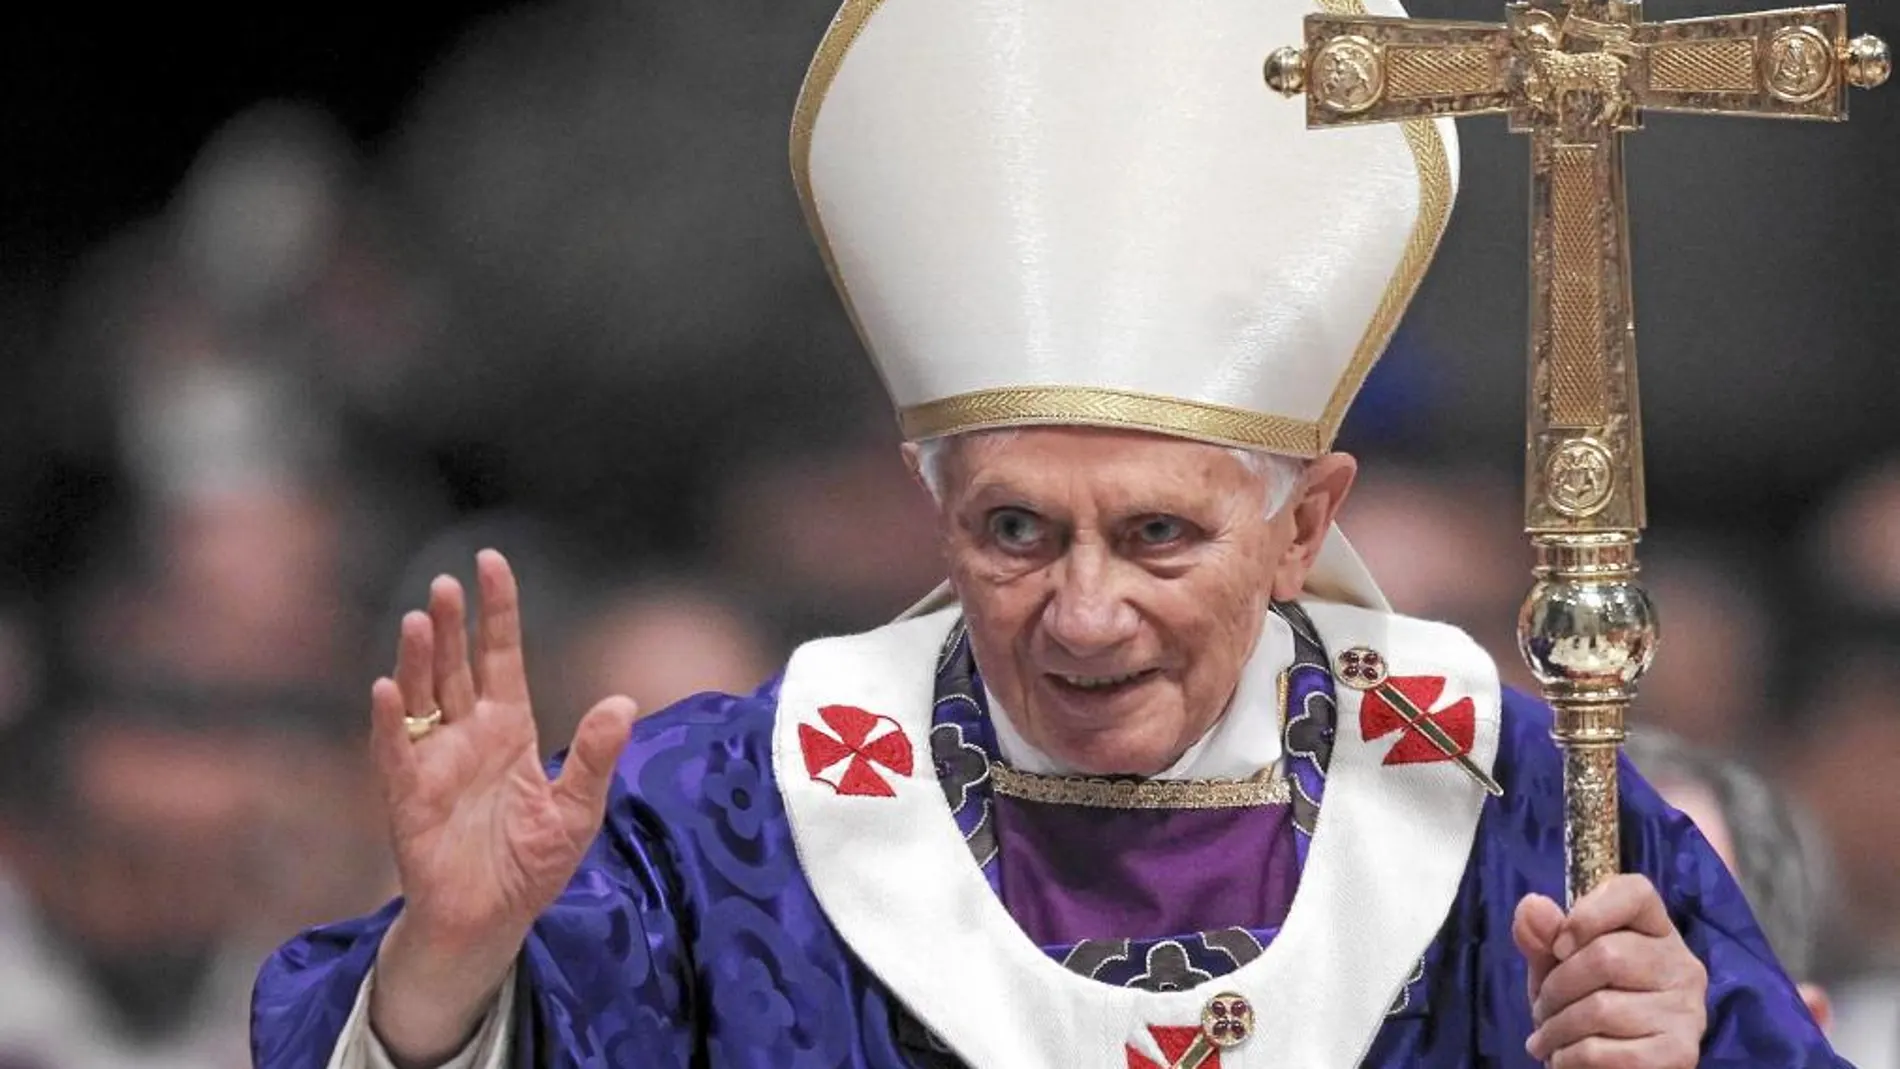 EMOCIÓN Aplausos y lágrimas se sucedieron a lo largo de la misa del Miércoles de Ceniza, la última Eucaristía pública del Papa